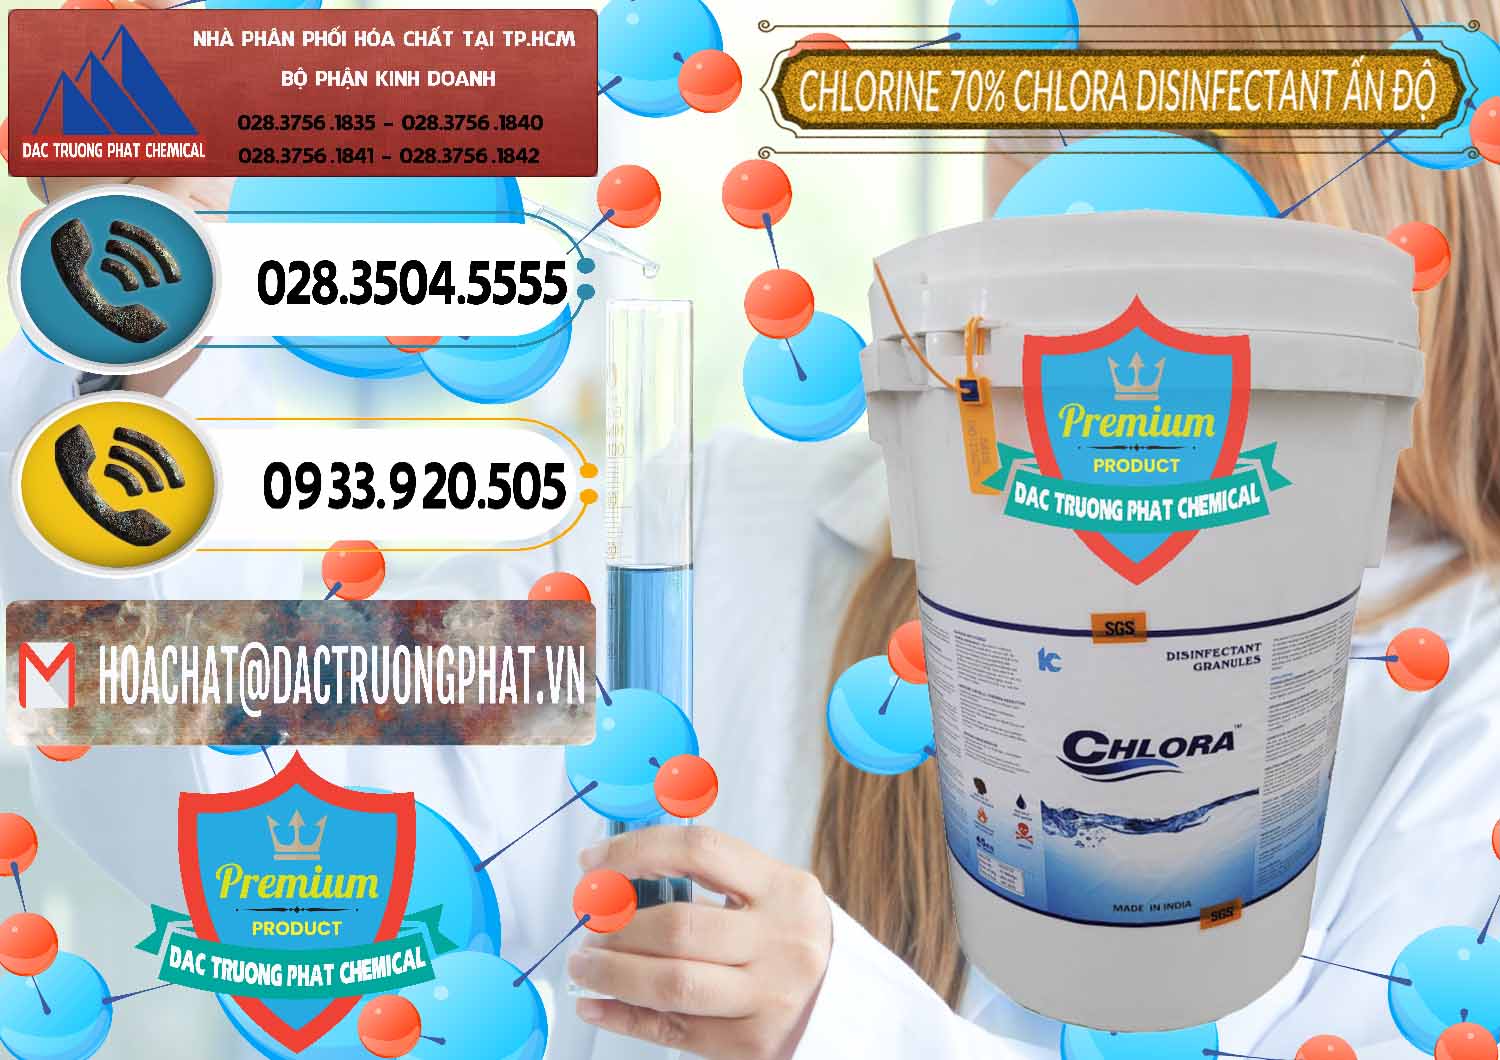 Chuyên phân phối _ bán Chlorine – Clorin 70% Chlora Disinfectant Ấn Độ India - 0213 - Bán - phân phối hóa chất tại TP.HCM - hoachatdetnhuom.vn